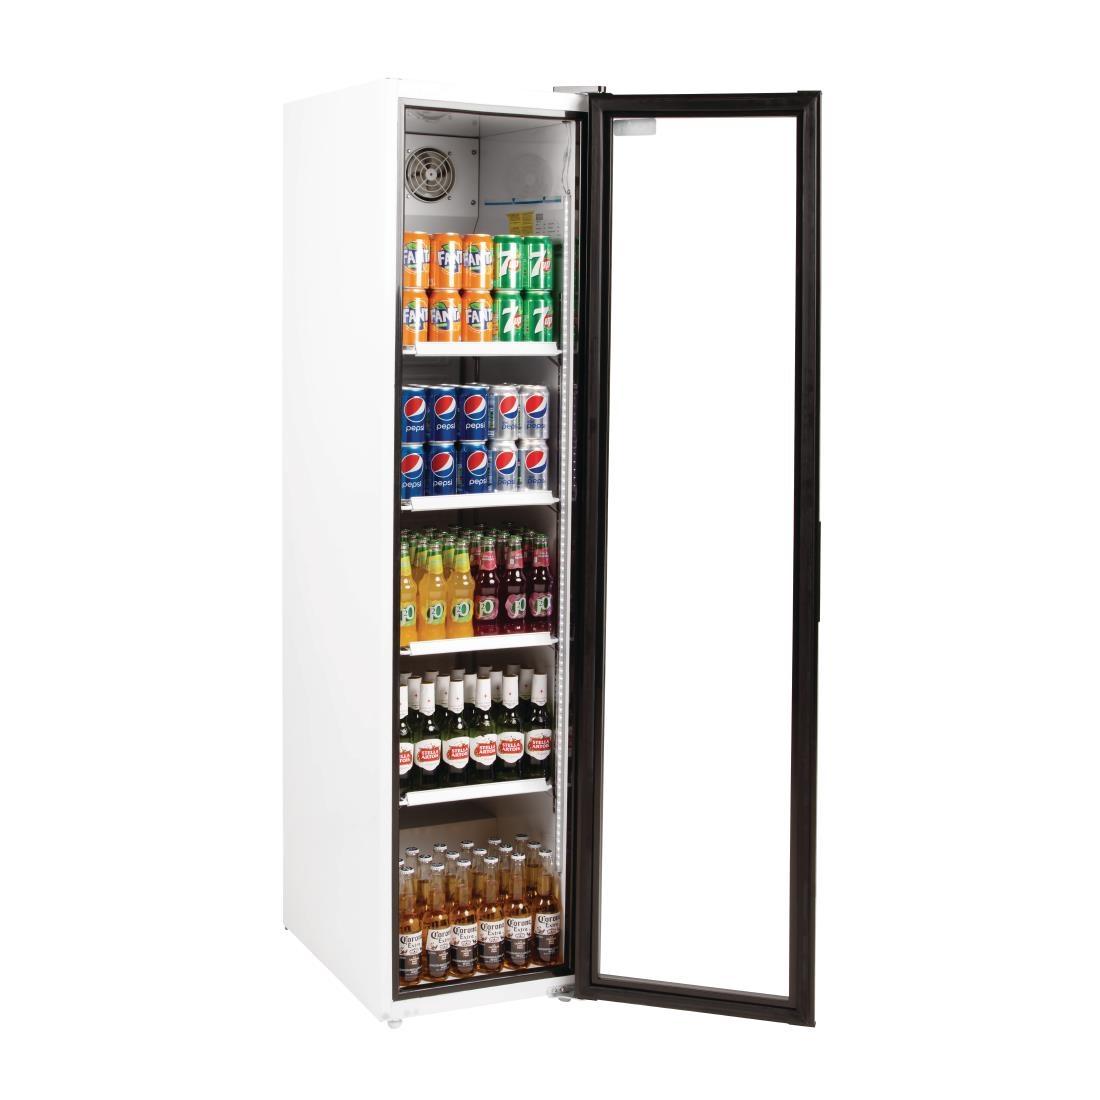 Normalmente Kenia raro Expositor frigorífico Slimline 1 puerta de cristal Polar